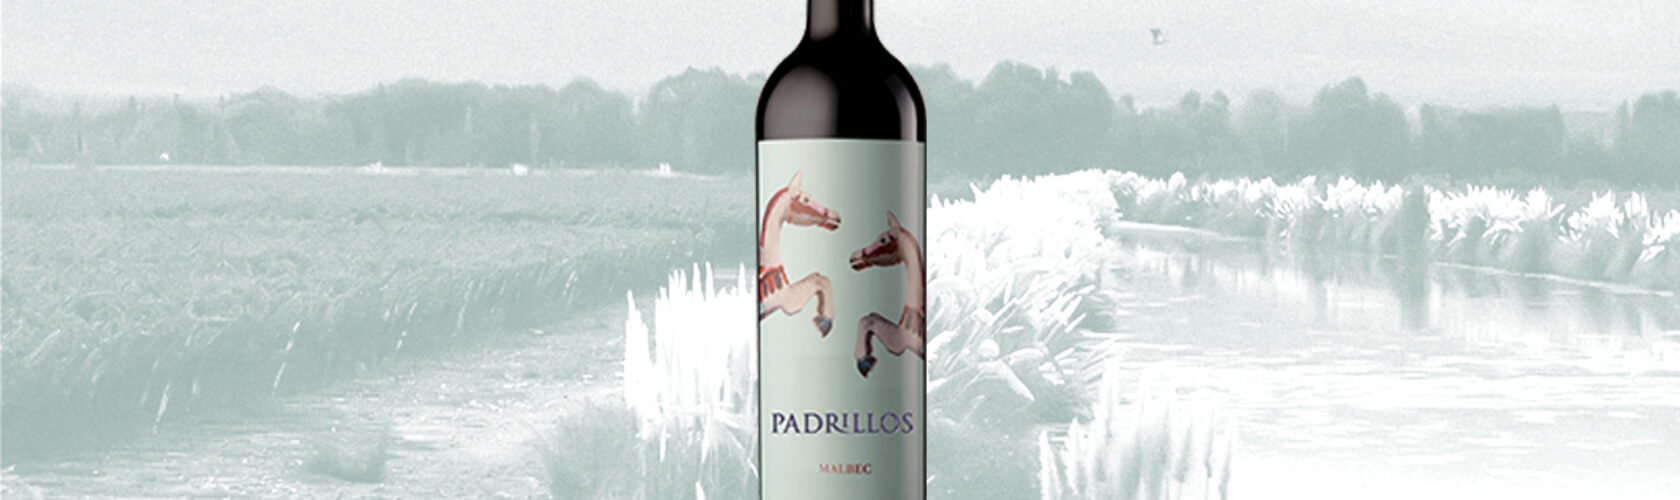 Padrillos Malbec é considerado um “Best Value” pela Wine Spectator